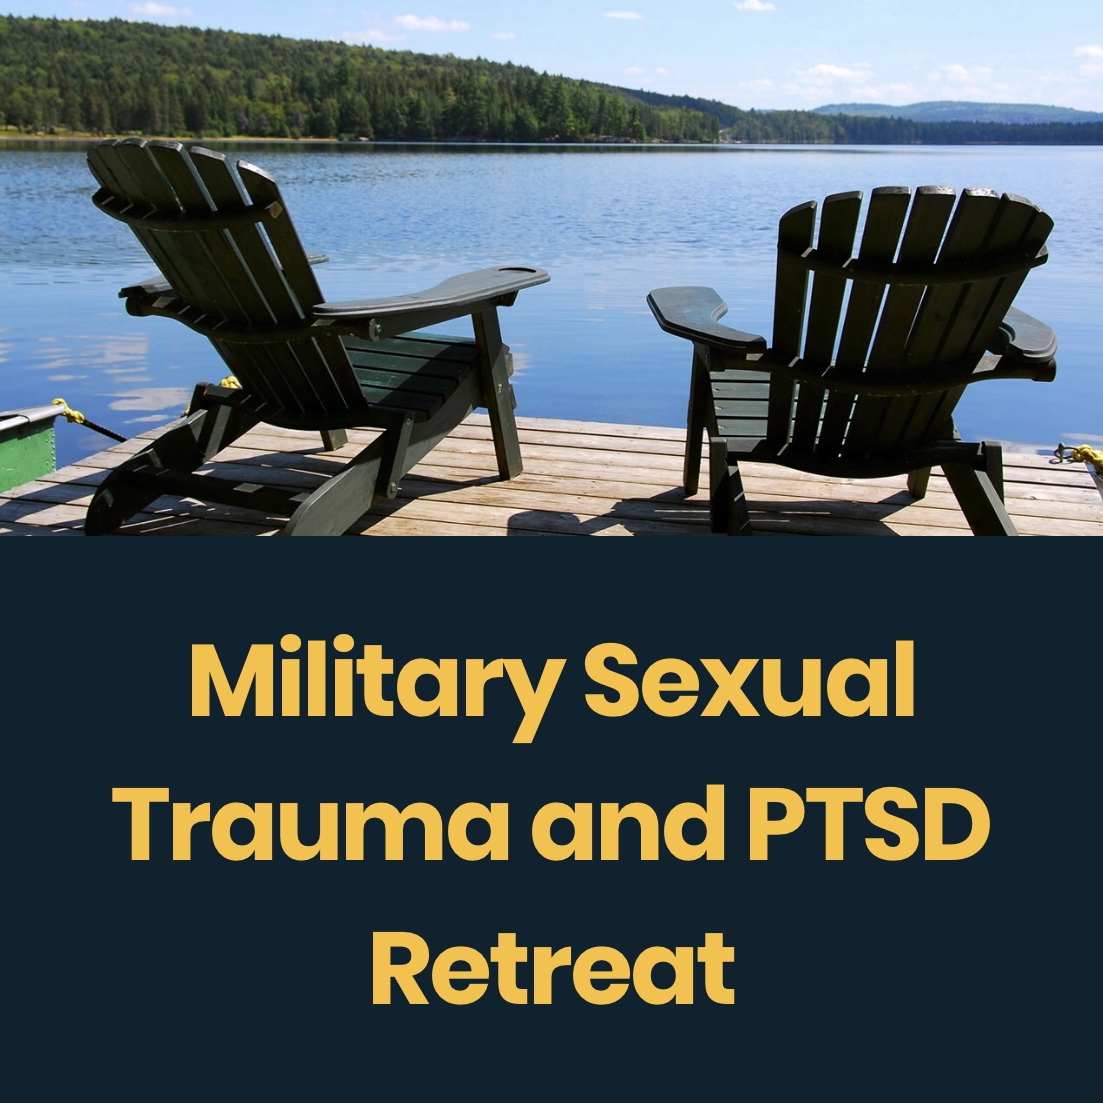 Military Sexual Trauma and PTSD Retreat